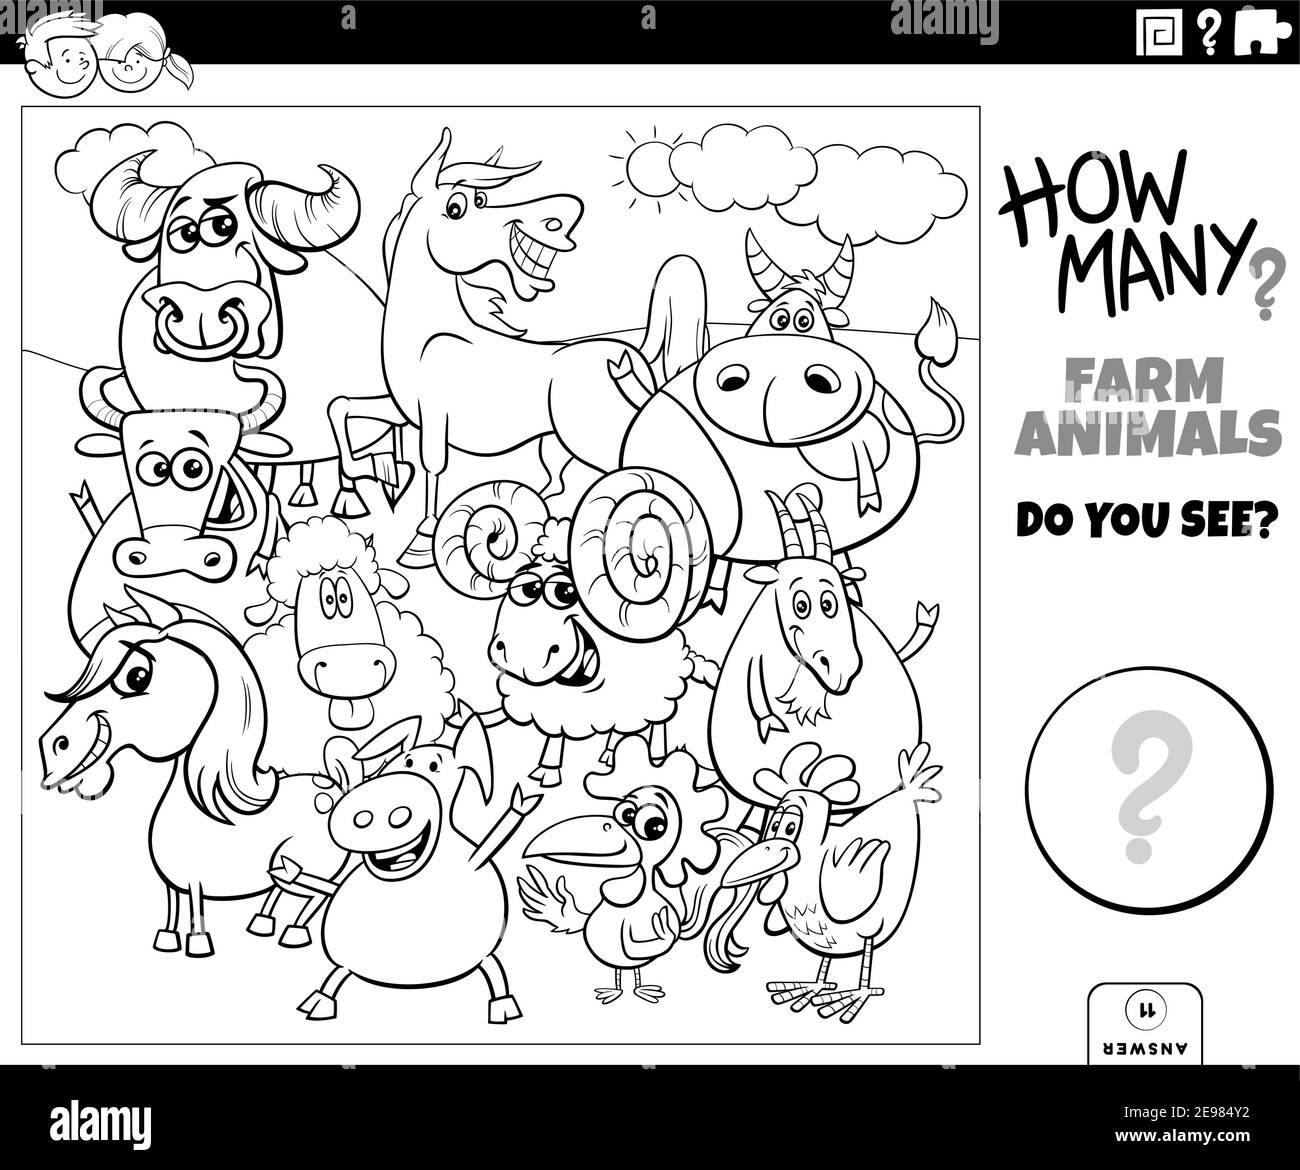 Illustration en noir et blanc du jeu éducatif de comptage pour les enfants avec la page de livre de coloriage de groupe de personnages animaux de ferme de dessin animé Illustration de Vecteur